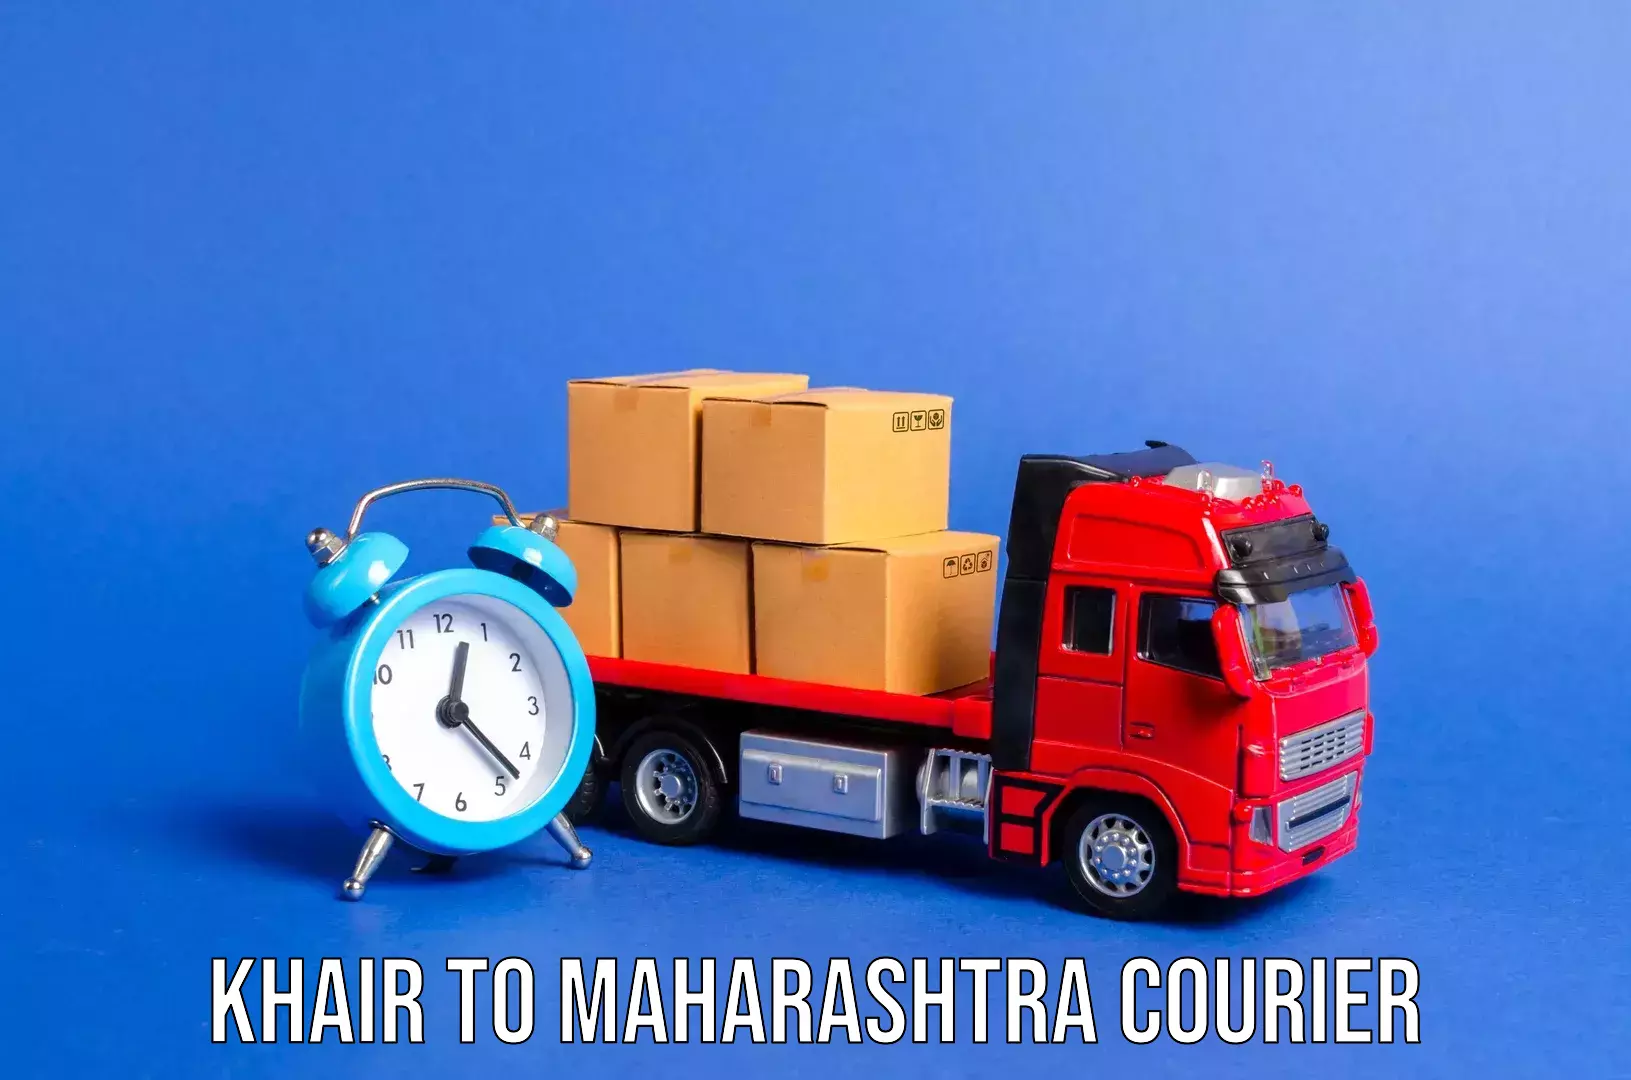 Luggage shipment tracking Khair to Maharashtra